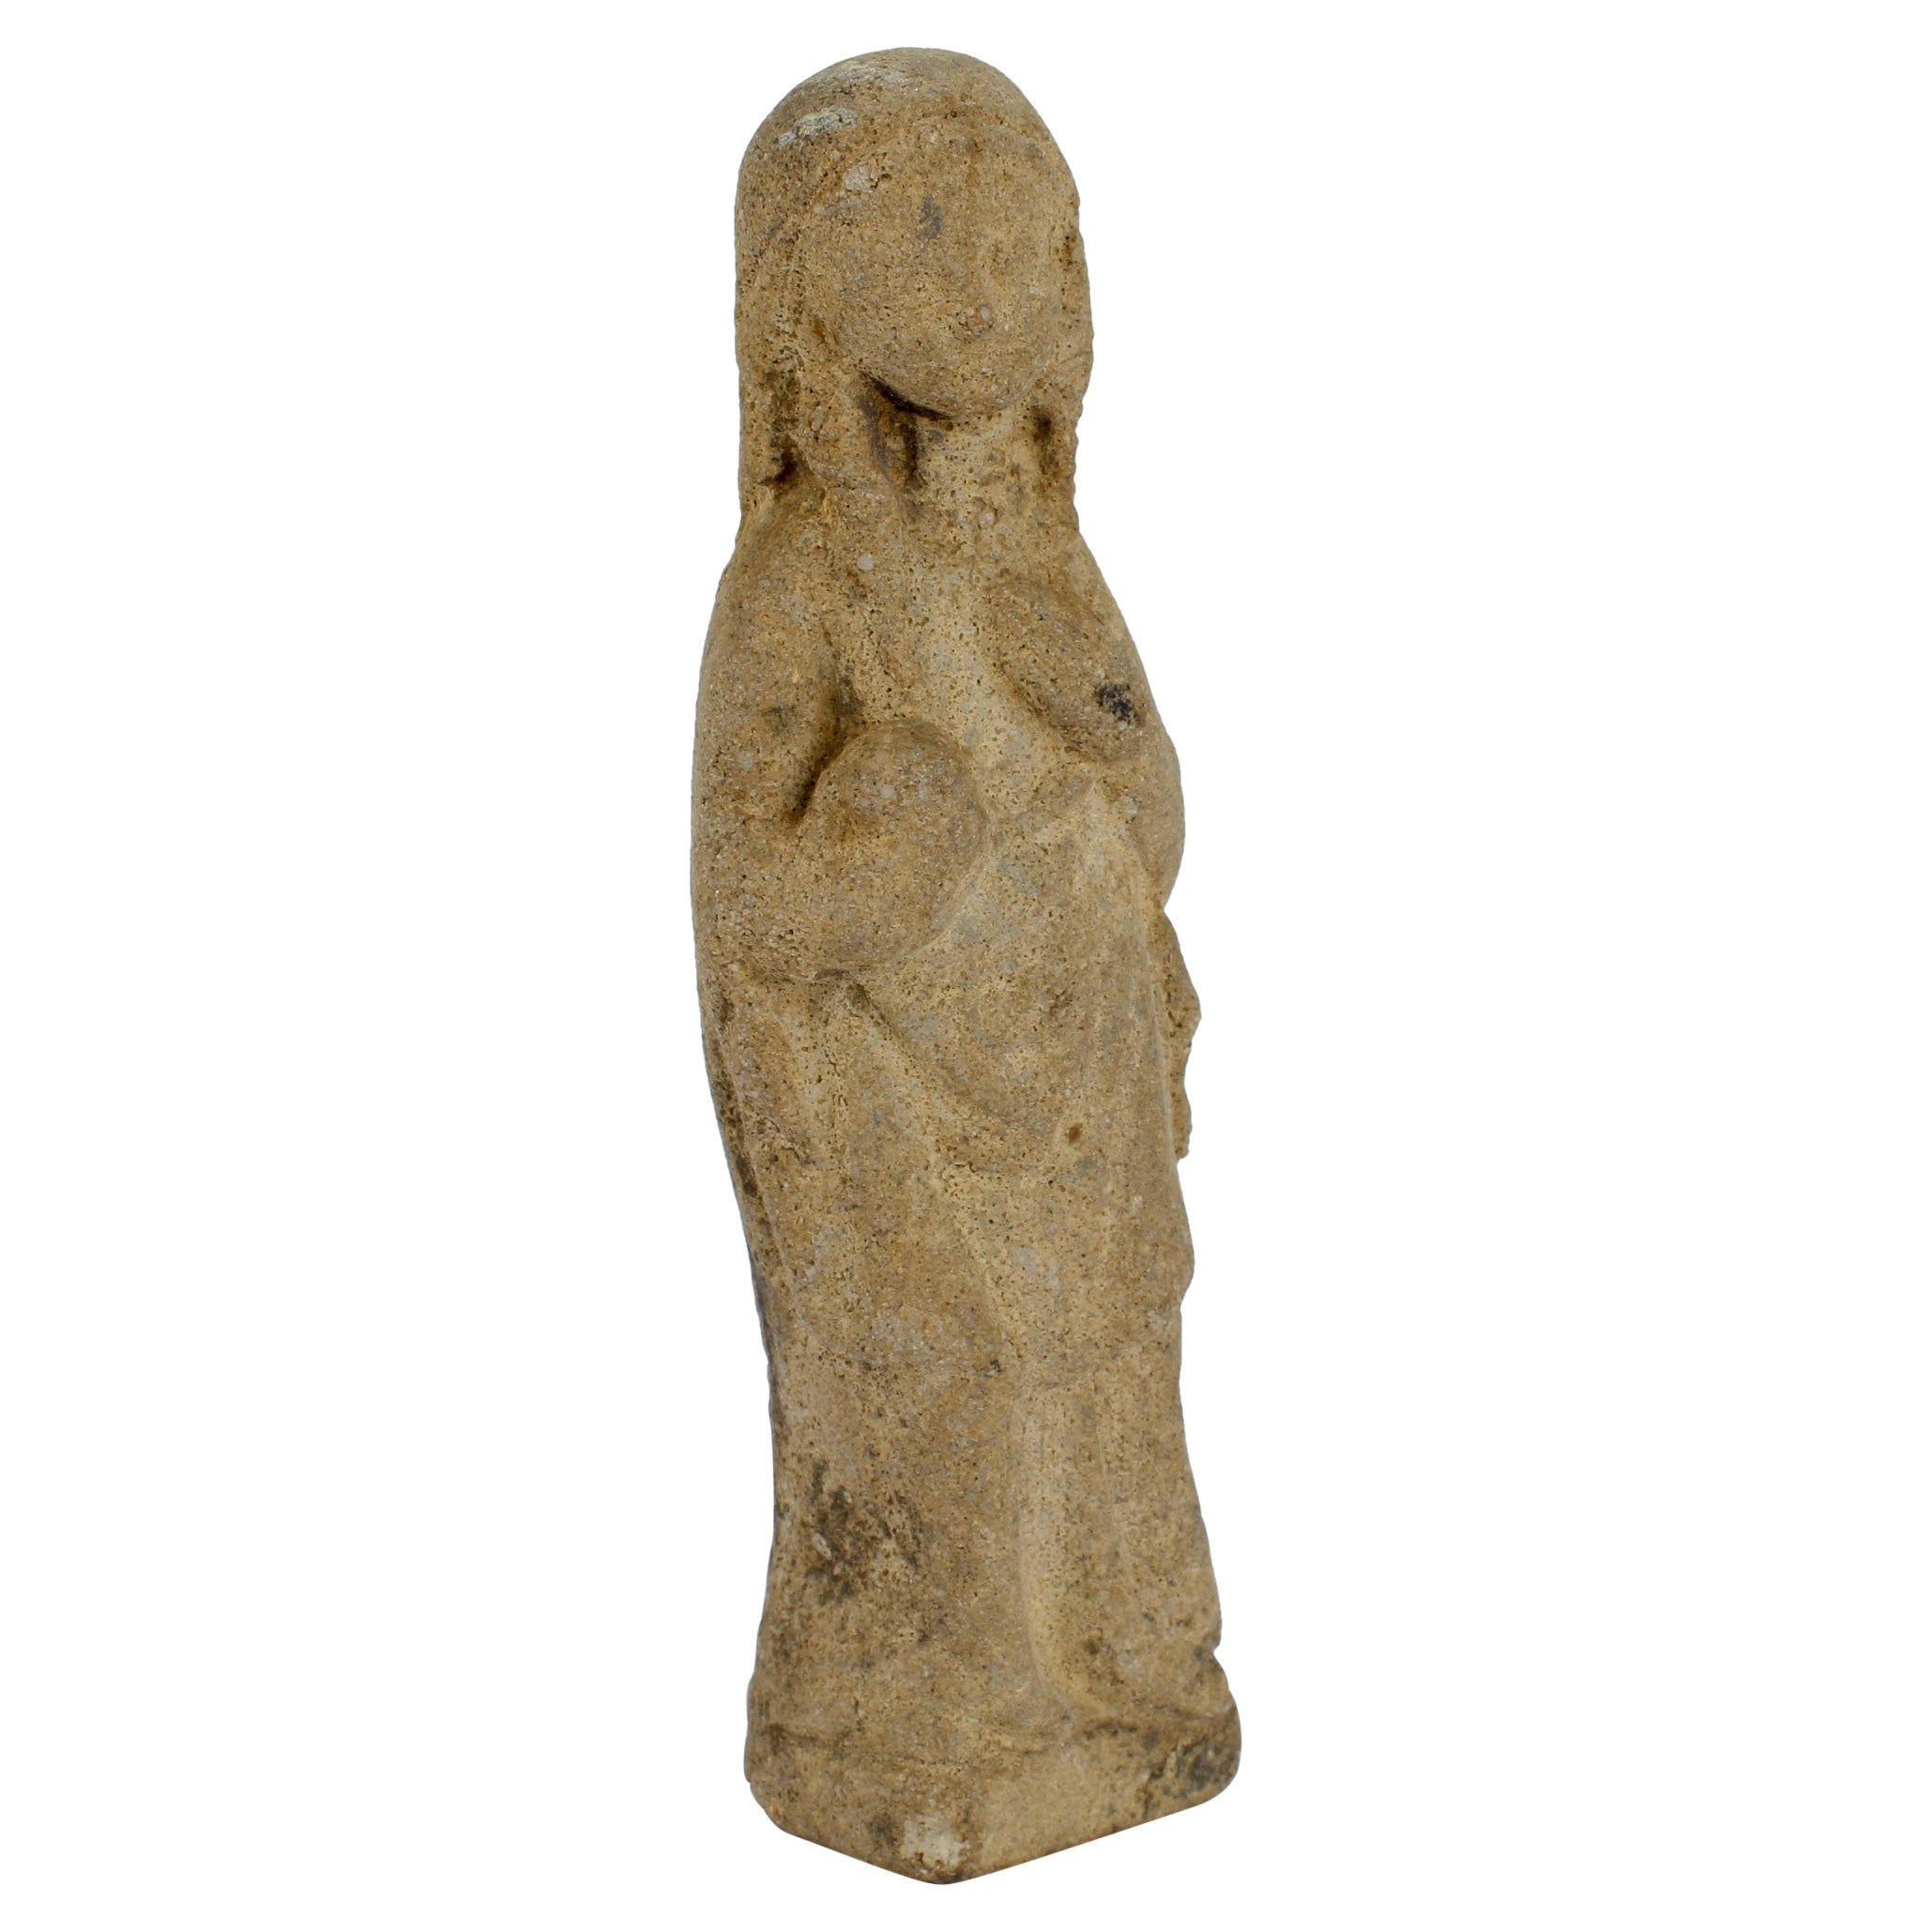 Ancien modèle gothique en pierre calcaire sculptée d'une Madonna ou d'une Vénus